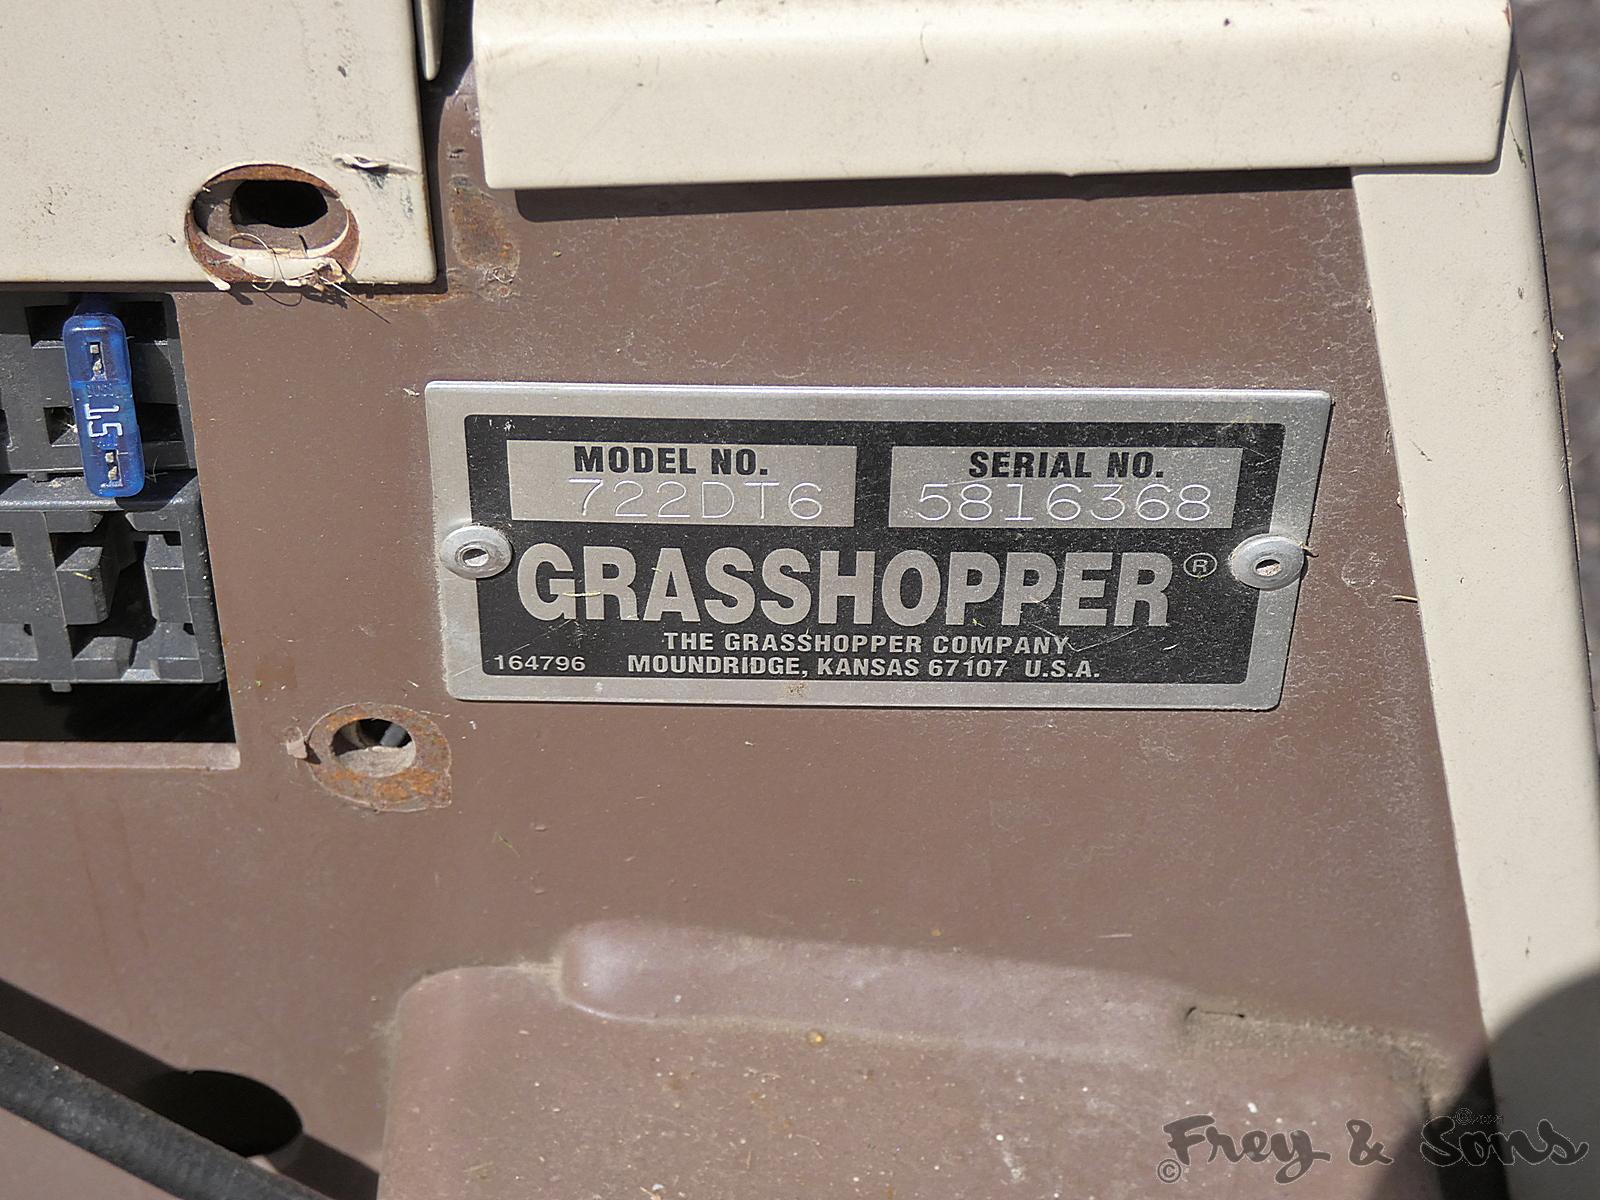 Grasshopper 722DT6 Mower, SN:5816368, Kubota Diesel, DuraMax 61 Deck, 2049